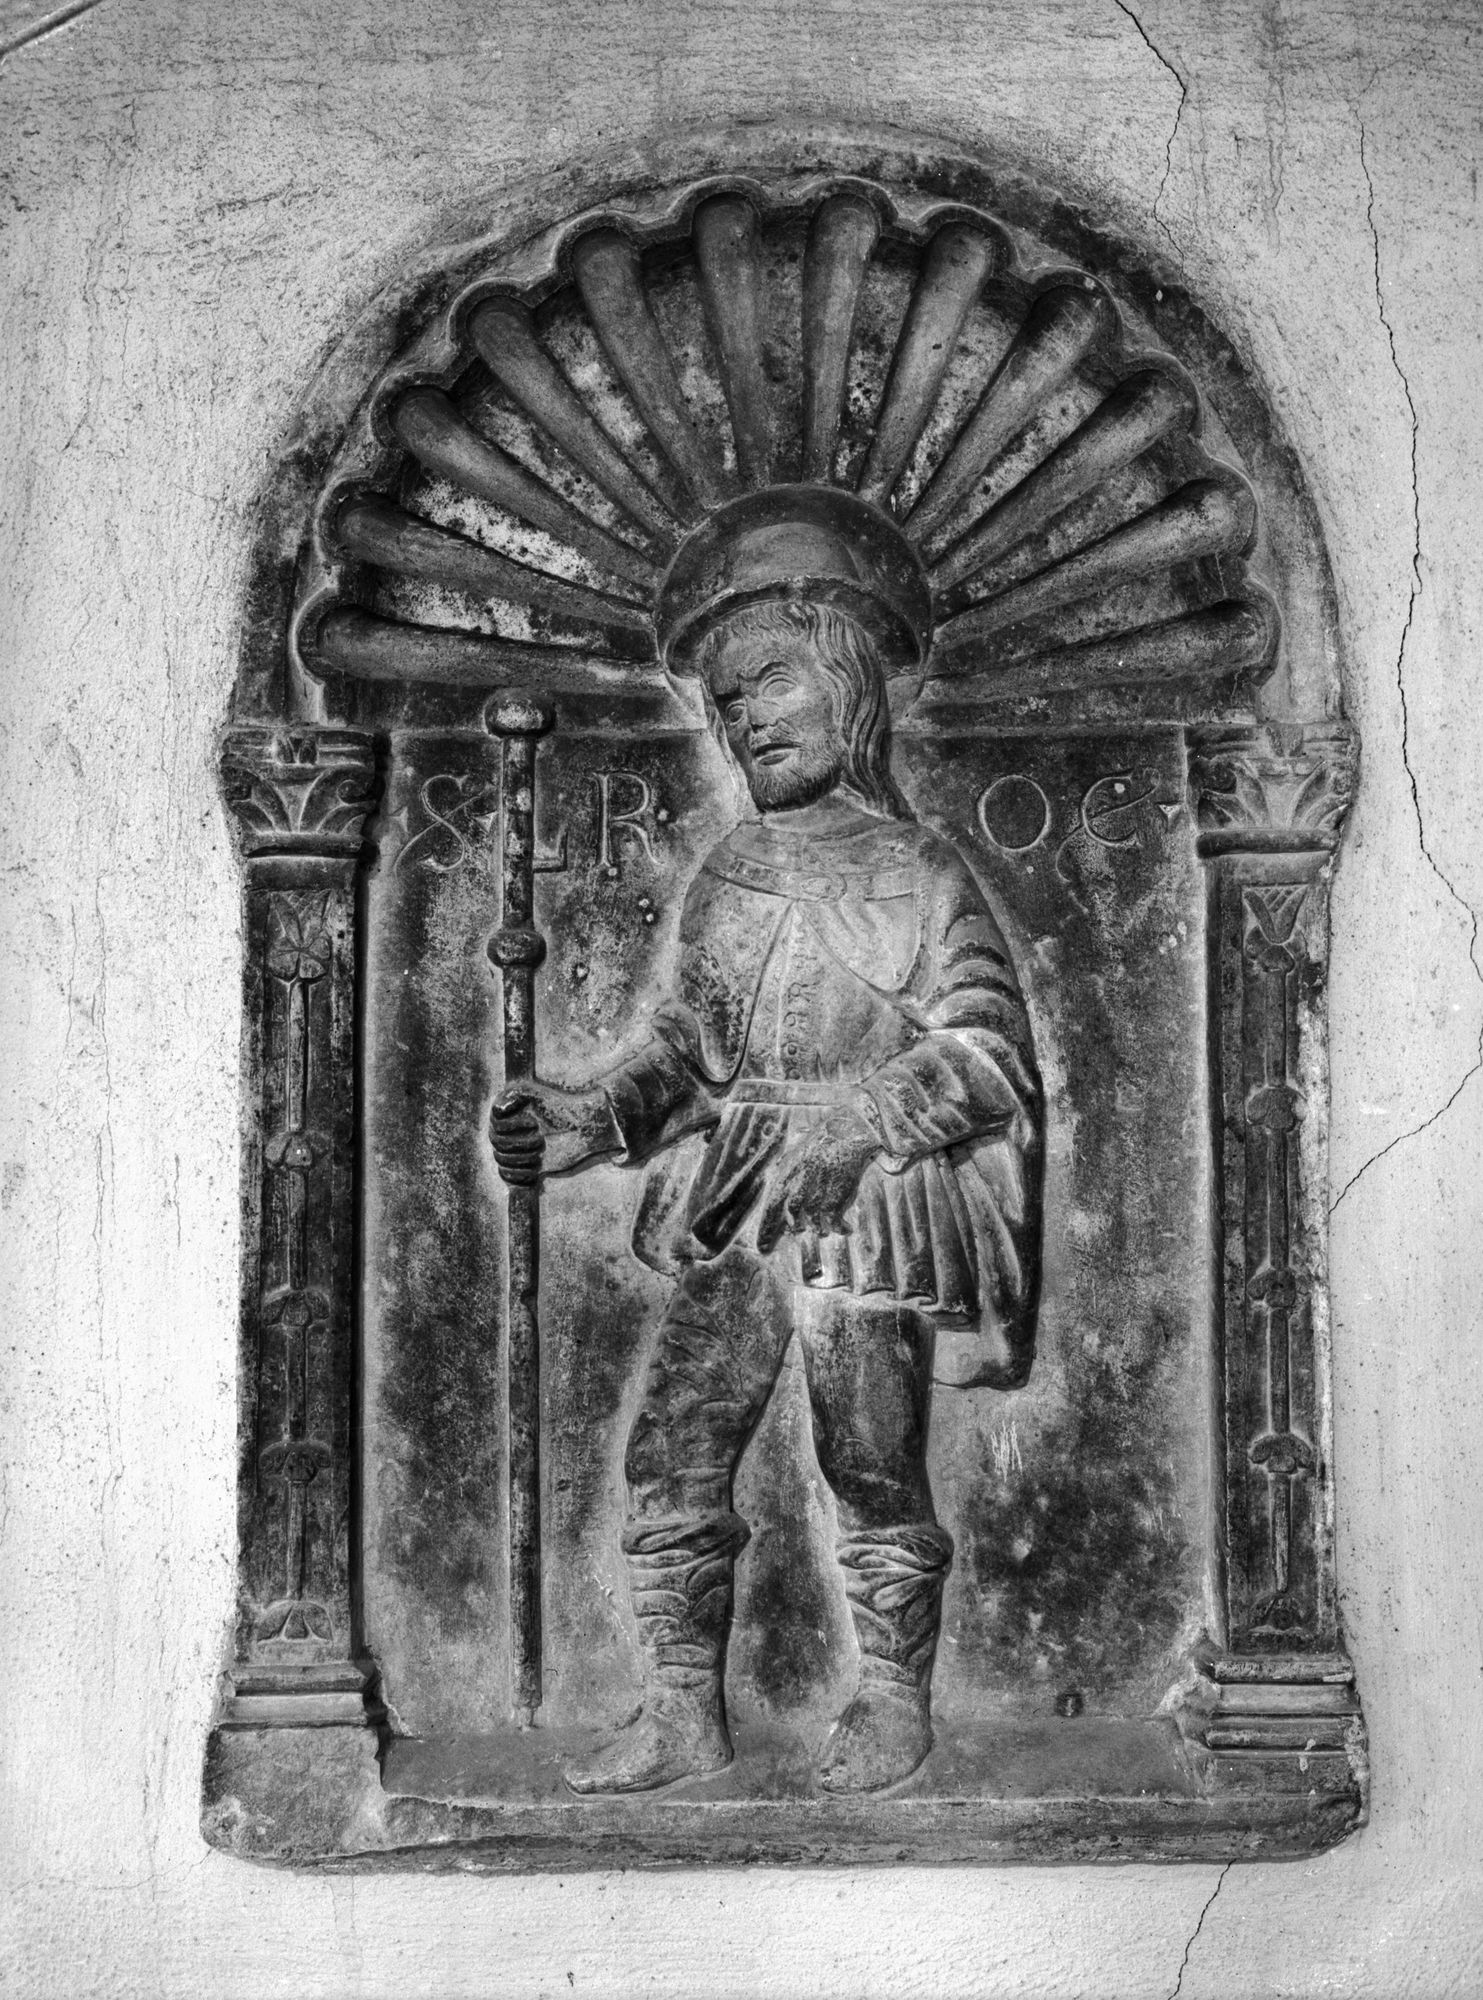 Cappelletta di Noale. Chiesa San Rocco: scultura (negativo) di Gabinetto fotografico (XX)